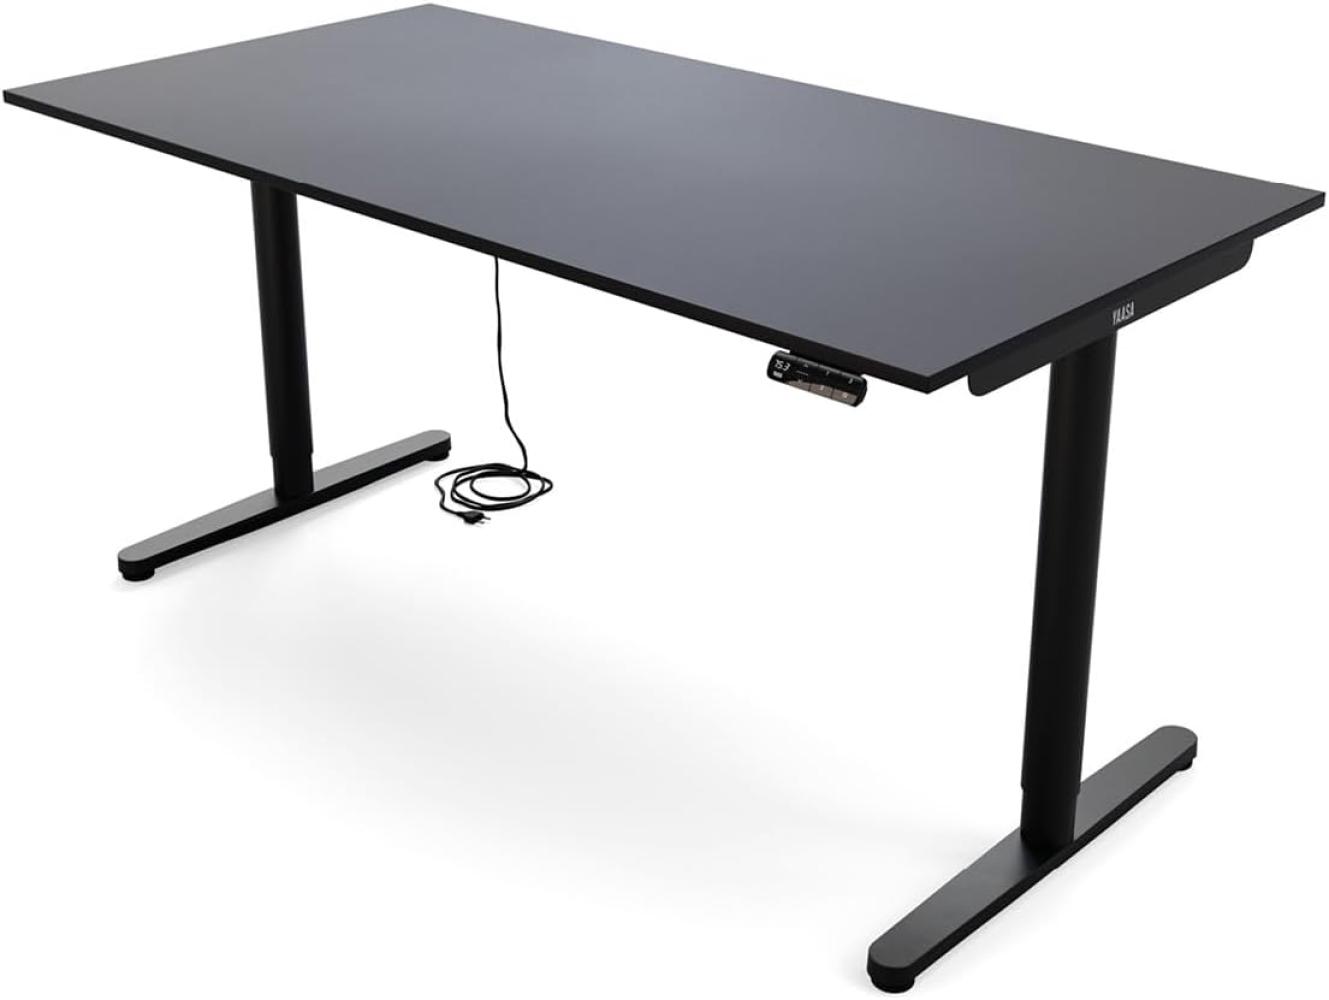 Yaasa Desk Essential Elektrisch höhenverstellbarer Schreibtisch, 160 x 80 cm, Anthrazit Bild 1